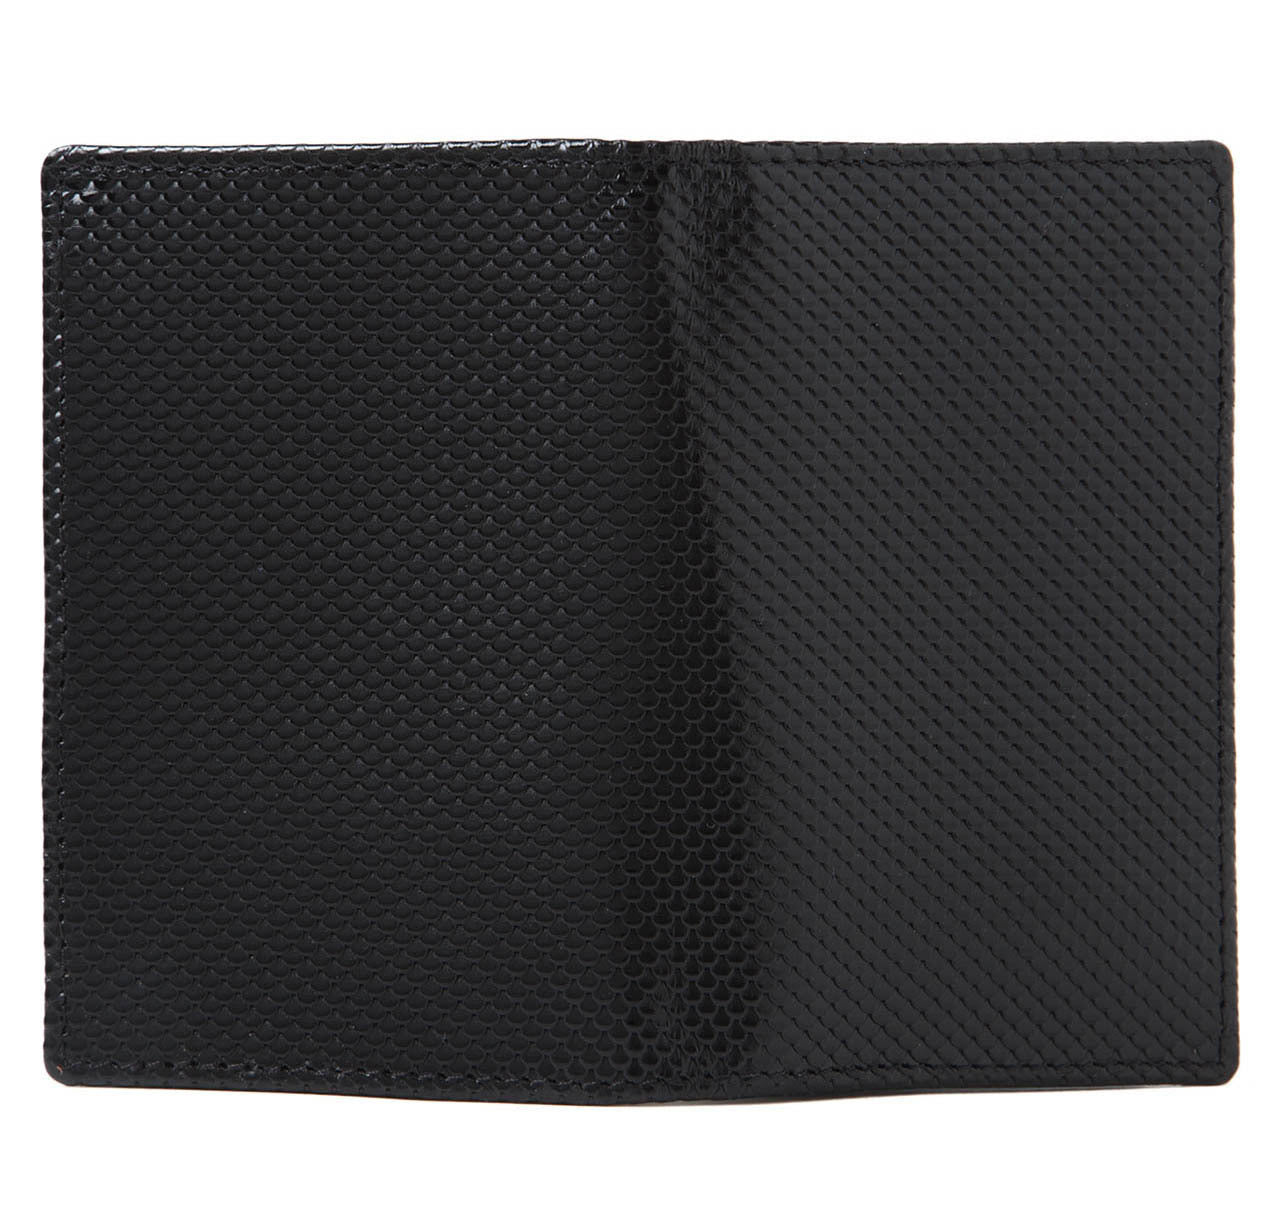 Black Carbon Fibre Leather Business Card Case